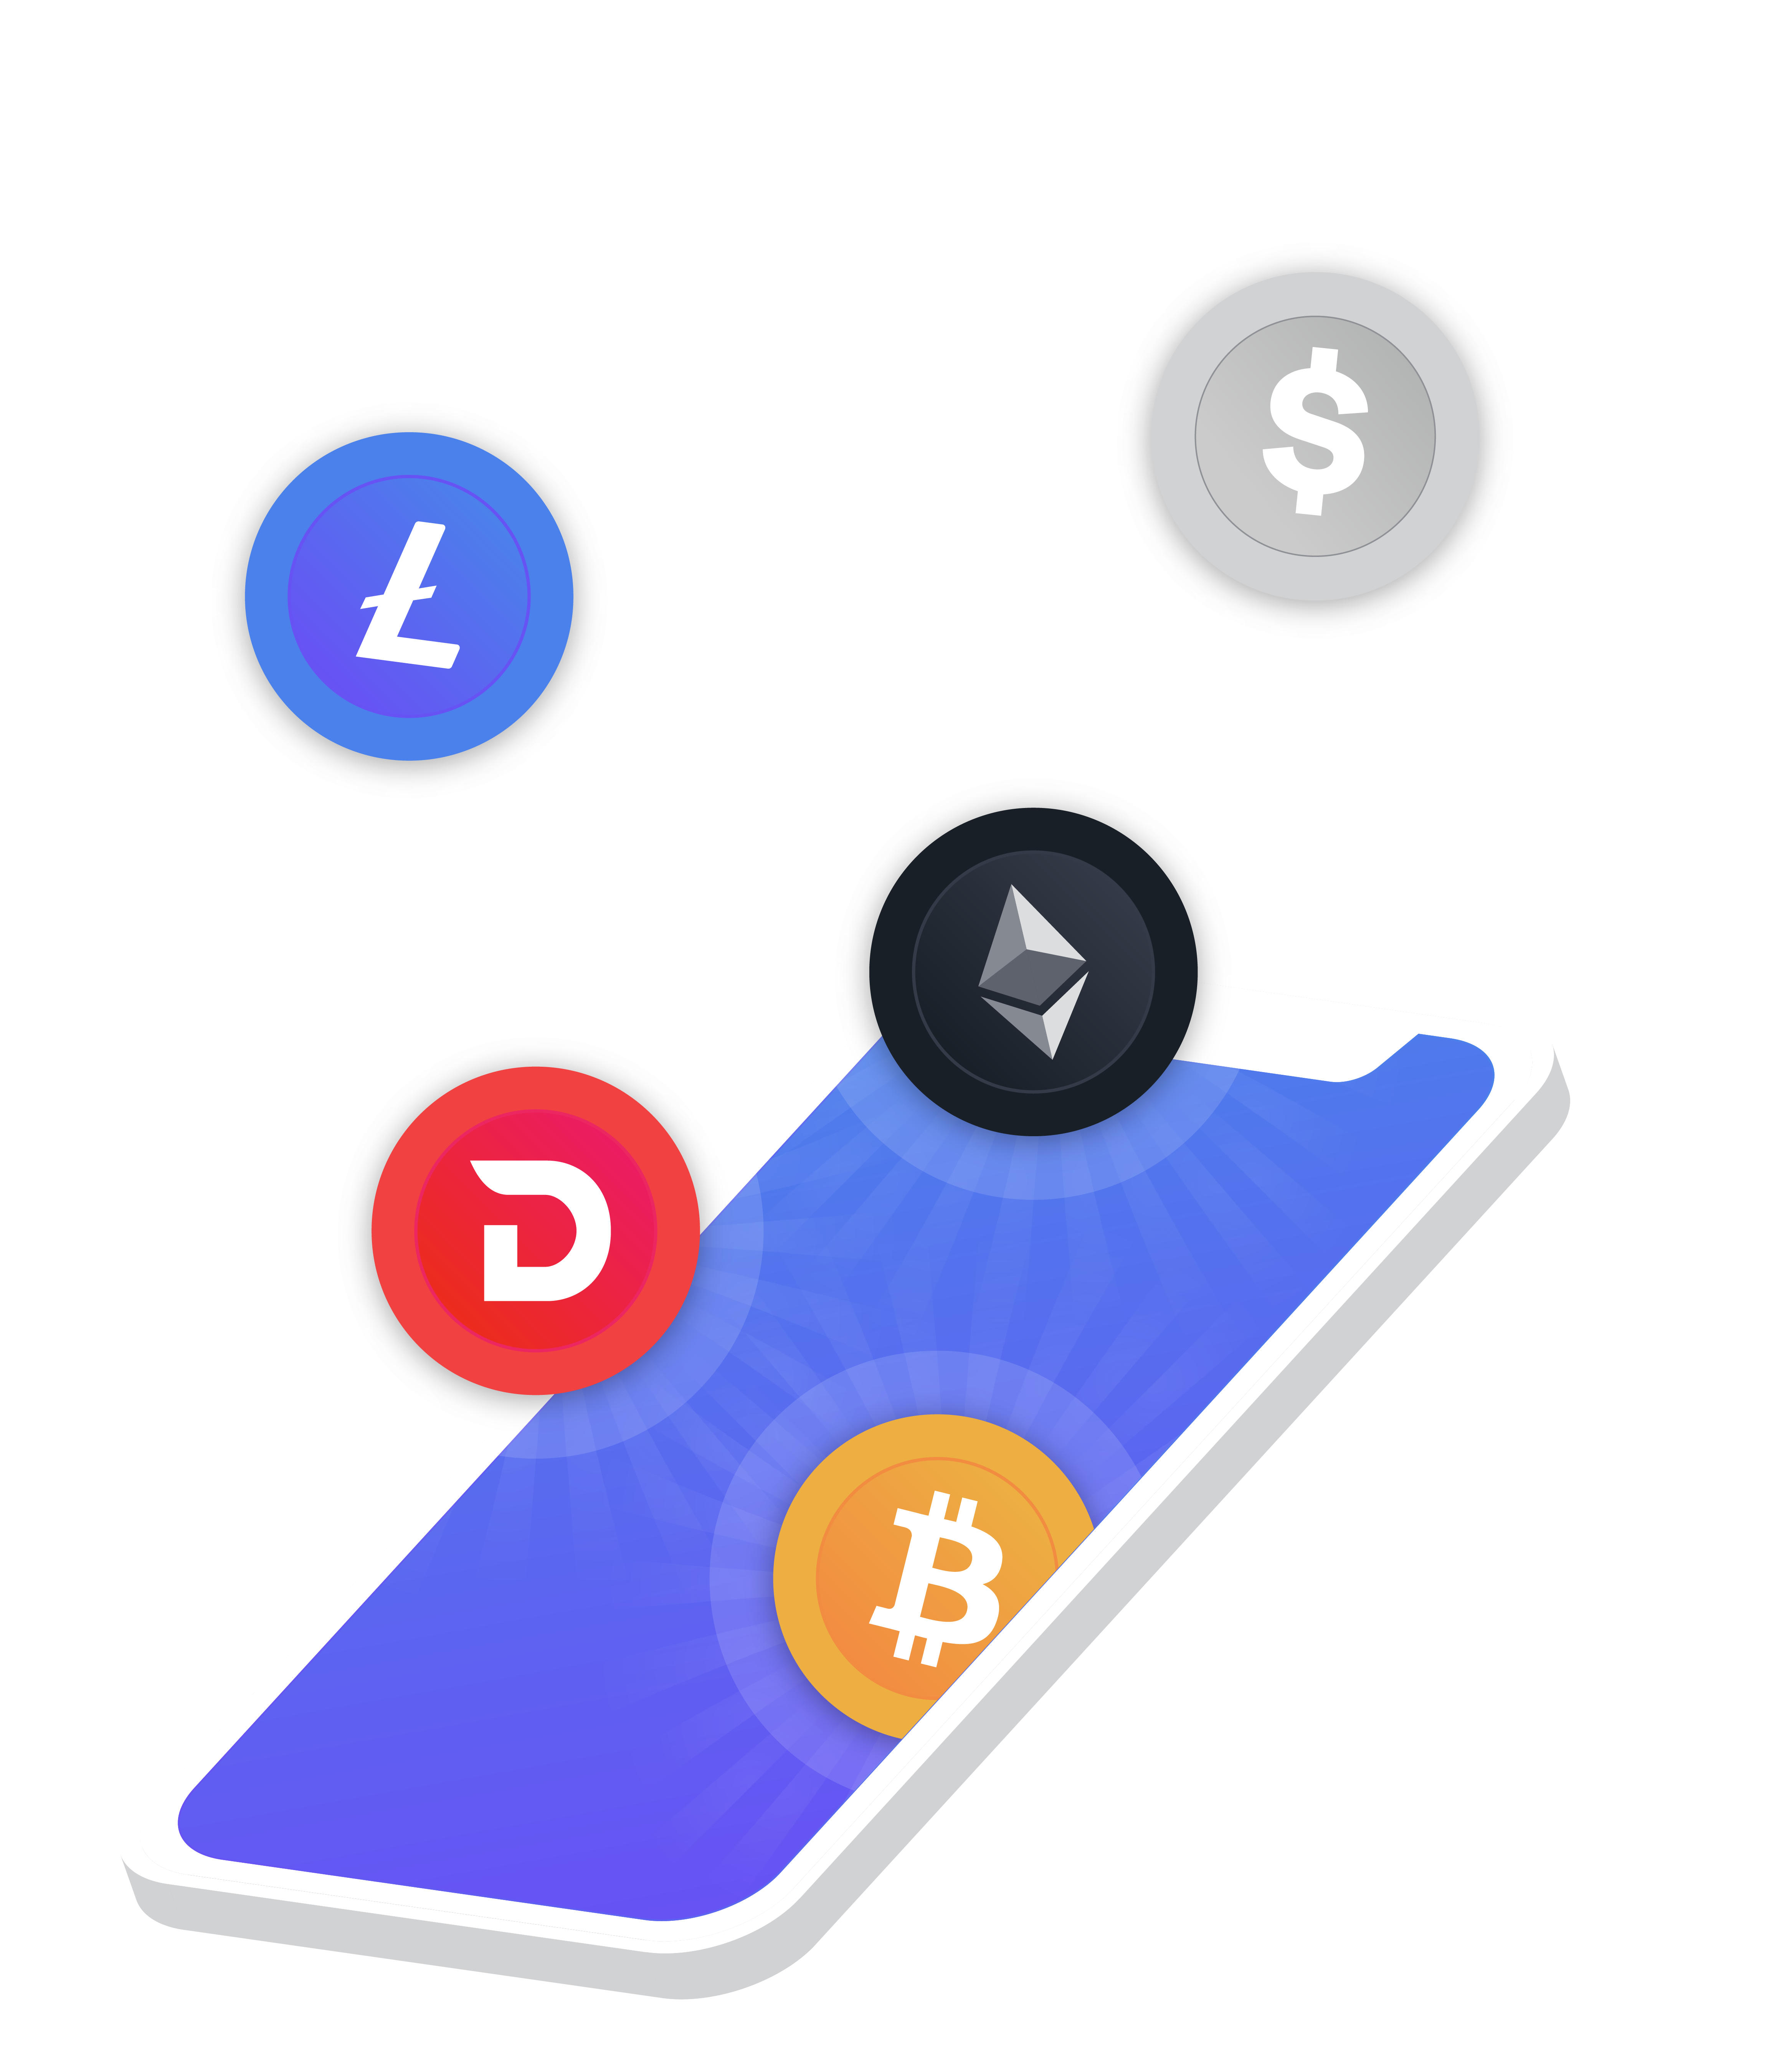 A blockchain powered payment platform